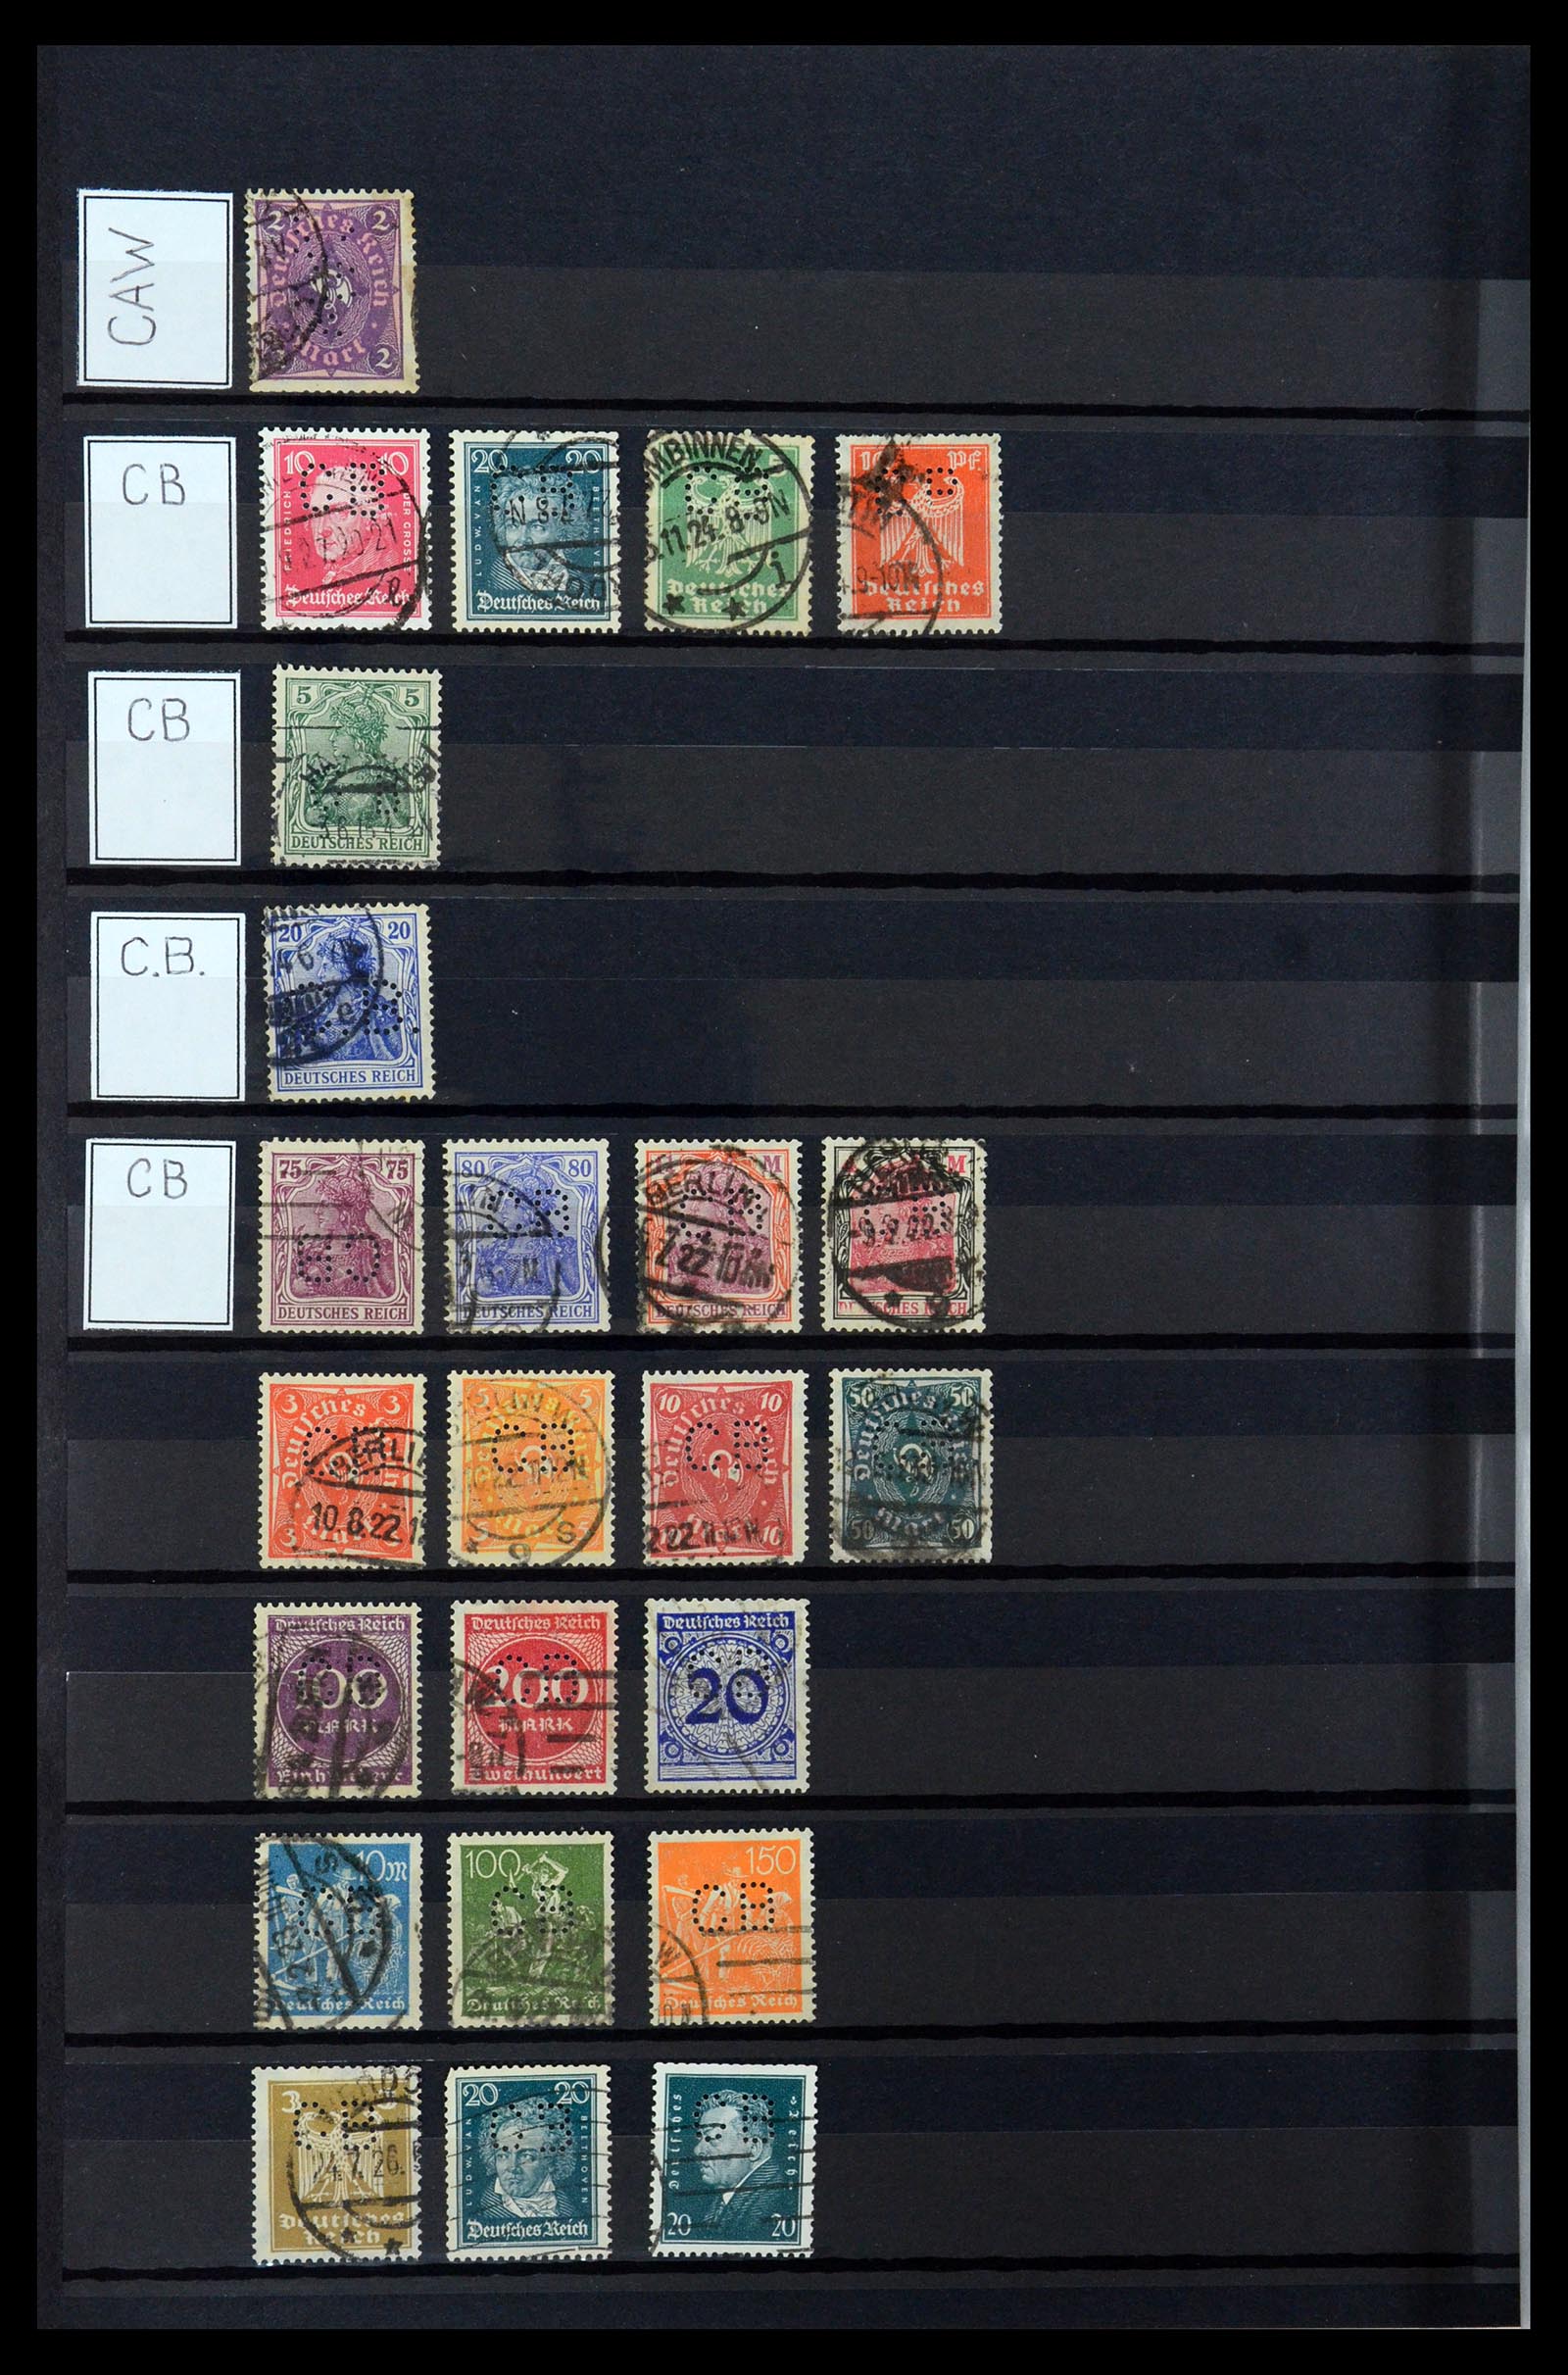 36405 058 - Stamp collection 36405 German Reich perfins 1880-1945.